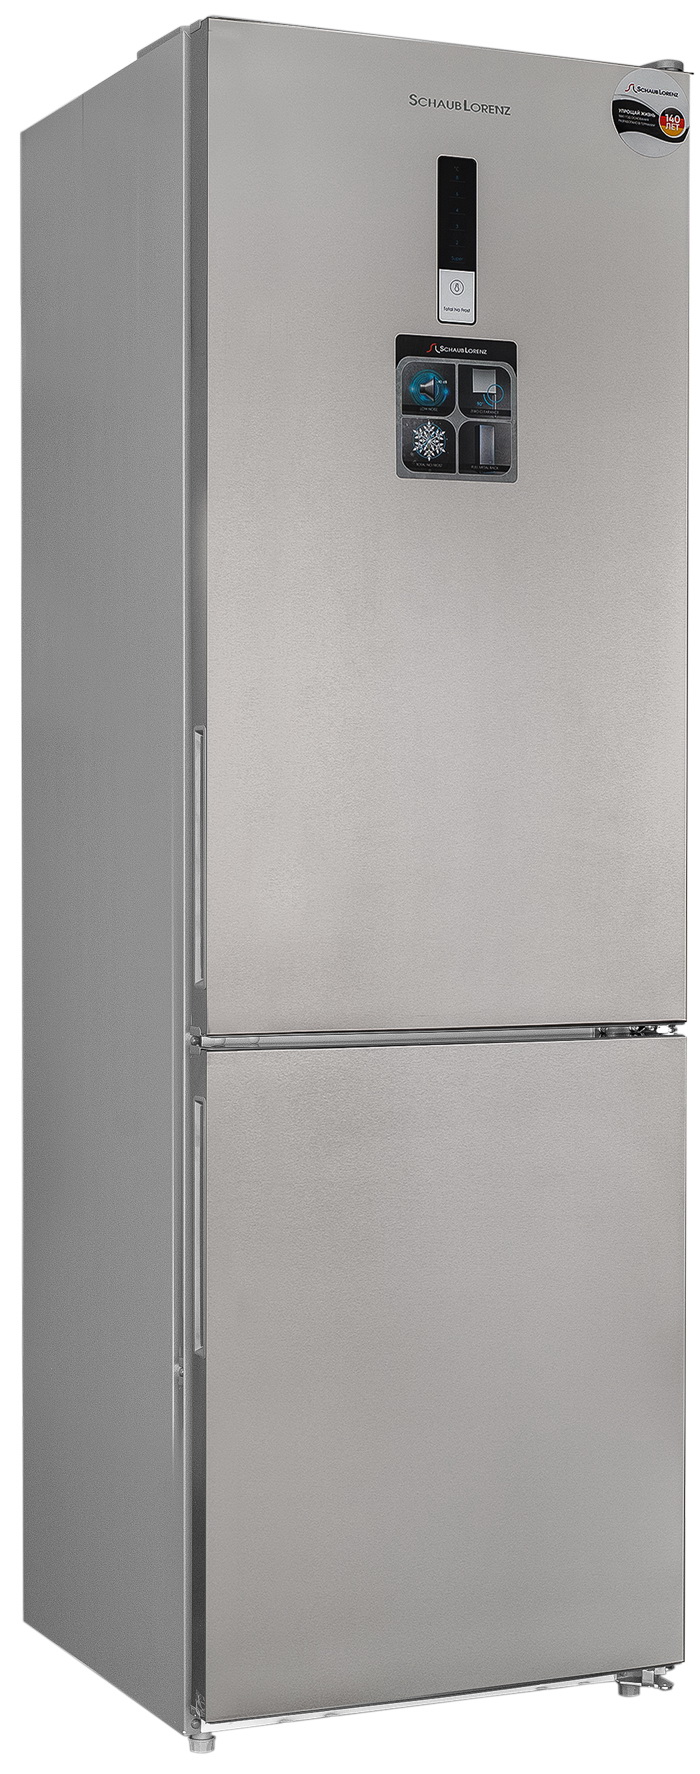 Холодильник Schaub Lorenz SLU C188D0 G серебристый двухкамерный холодильник schaub lorenz slu c188d0 w